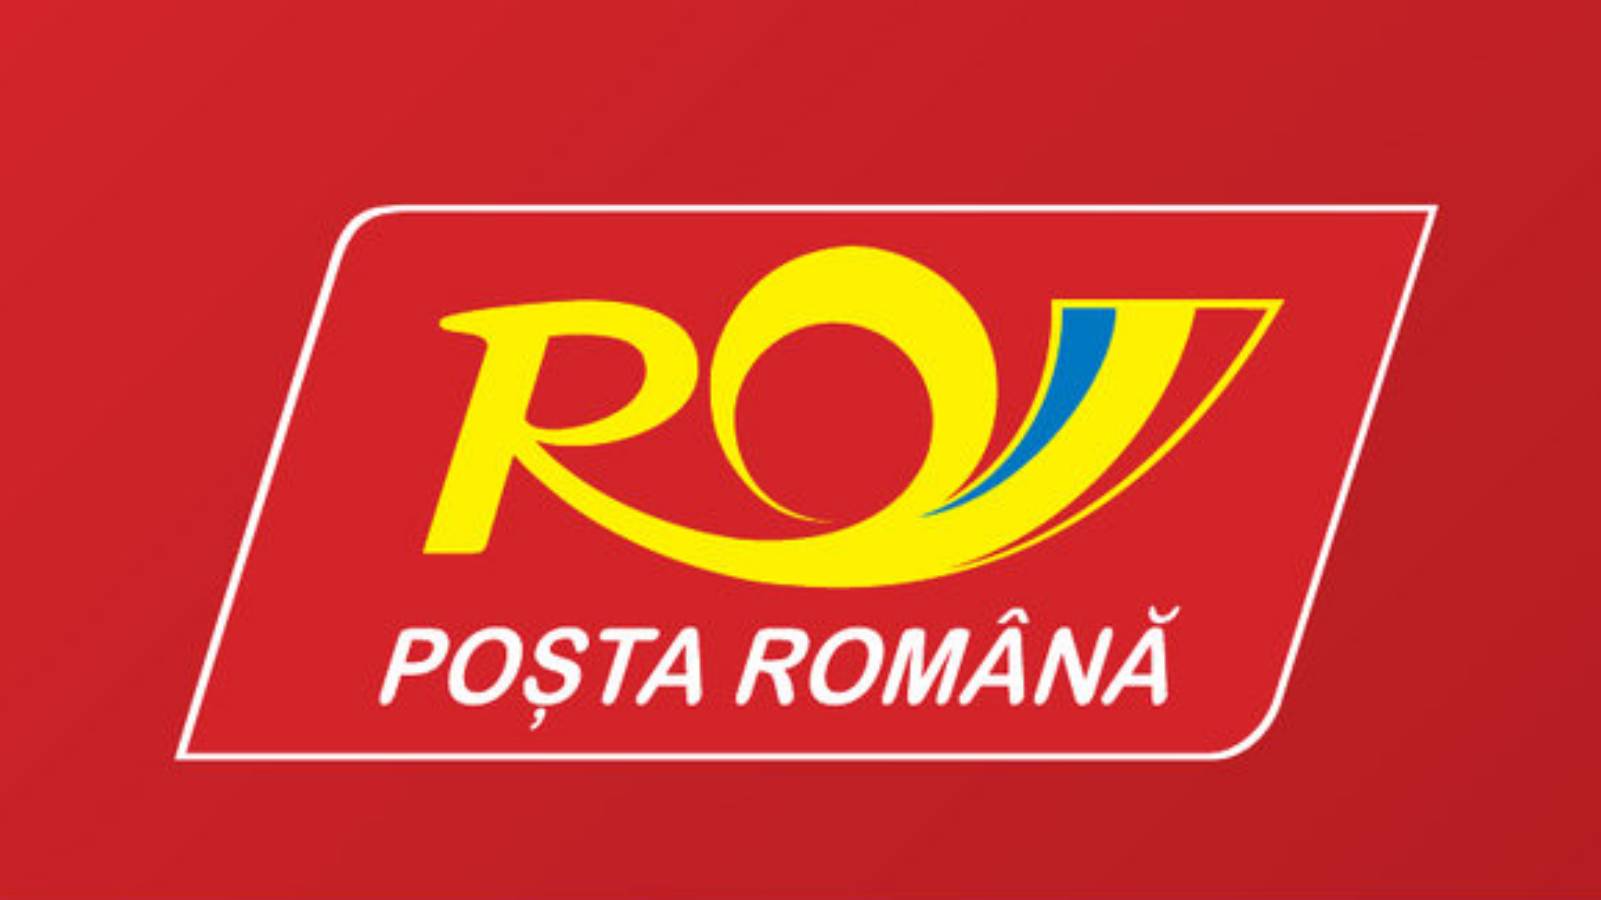 Cartes postales de la poste roumaine